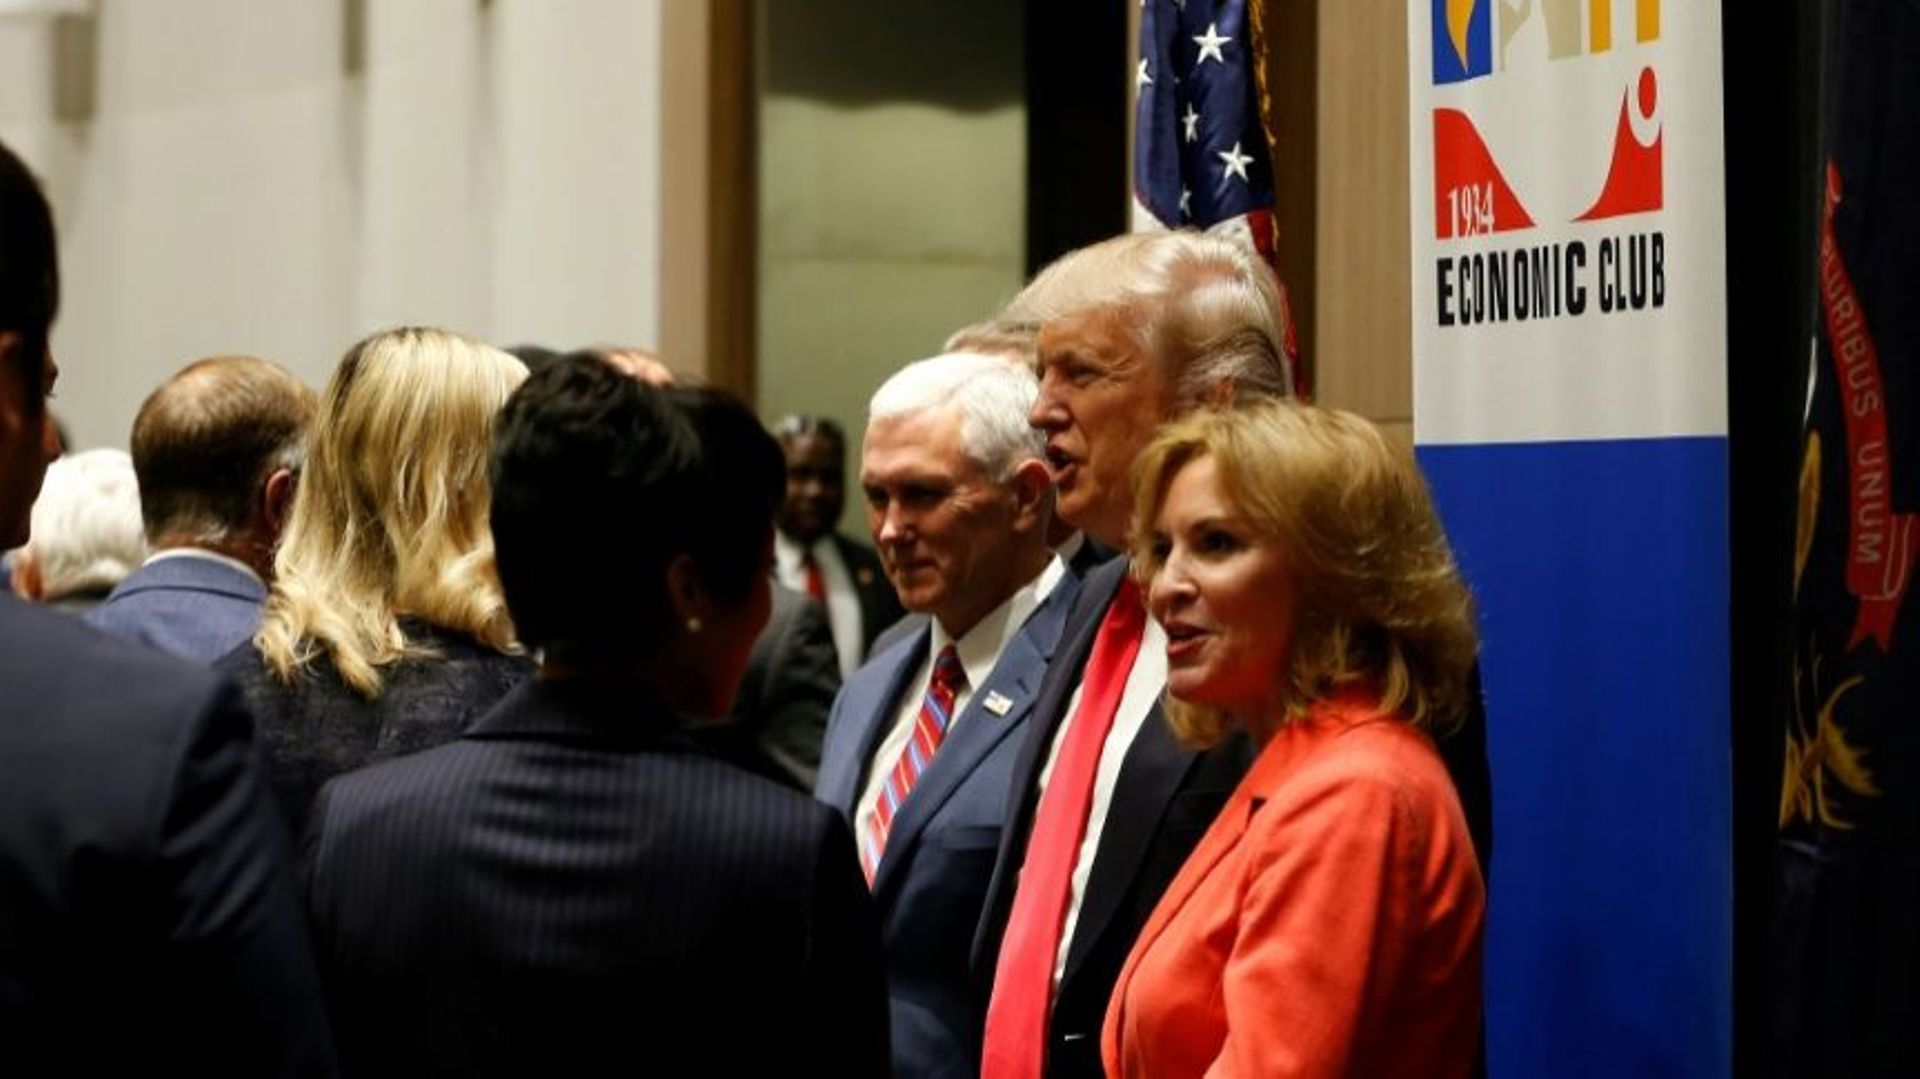 Donald Trump, en campagne, au Detroit Economic Club à Detroit, aux Etats-Unis, le 8 août 2016 